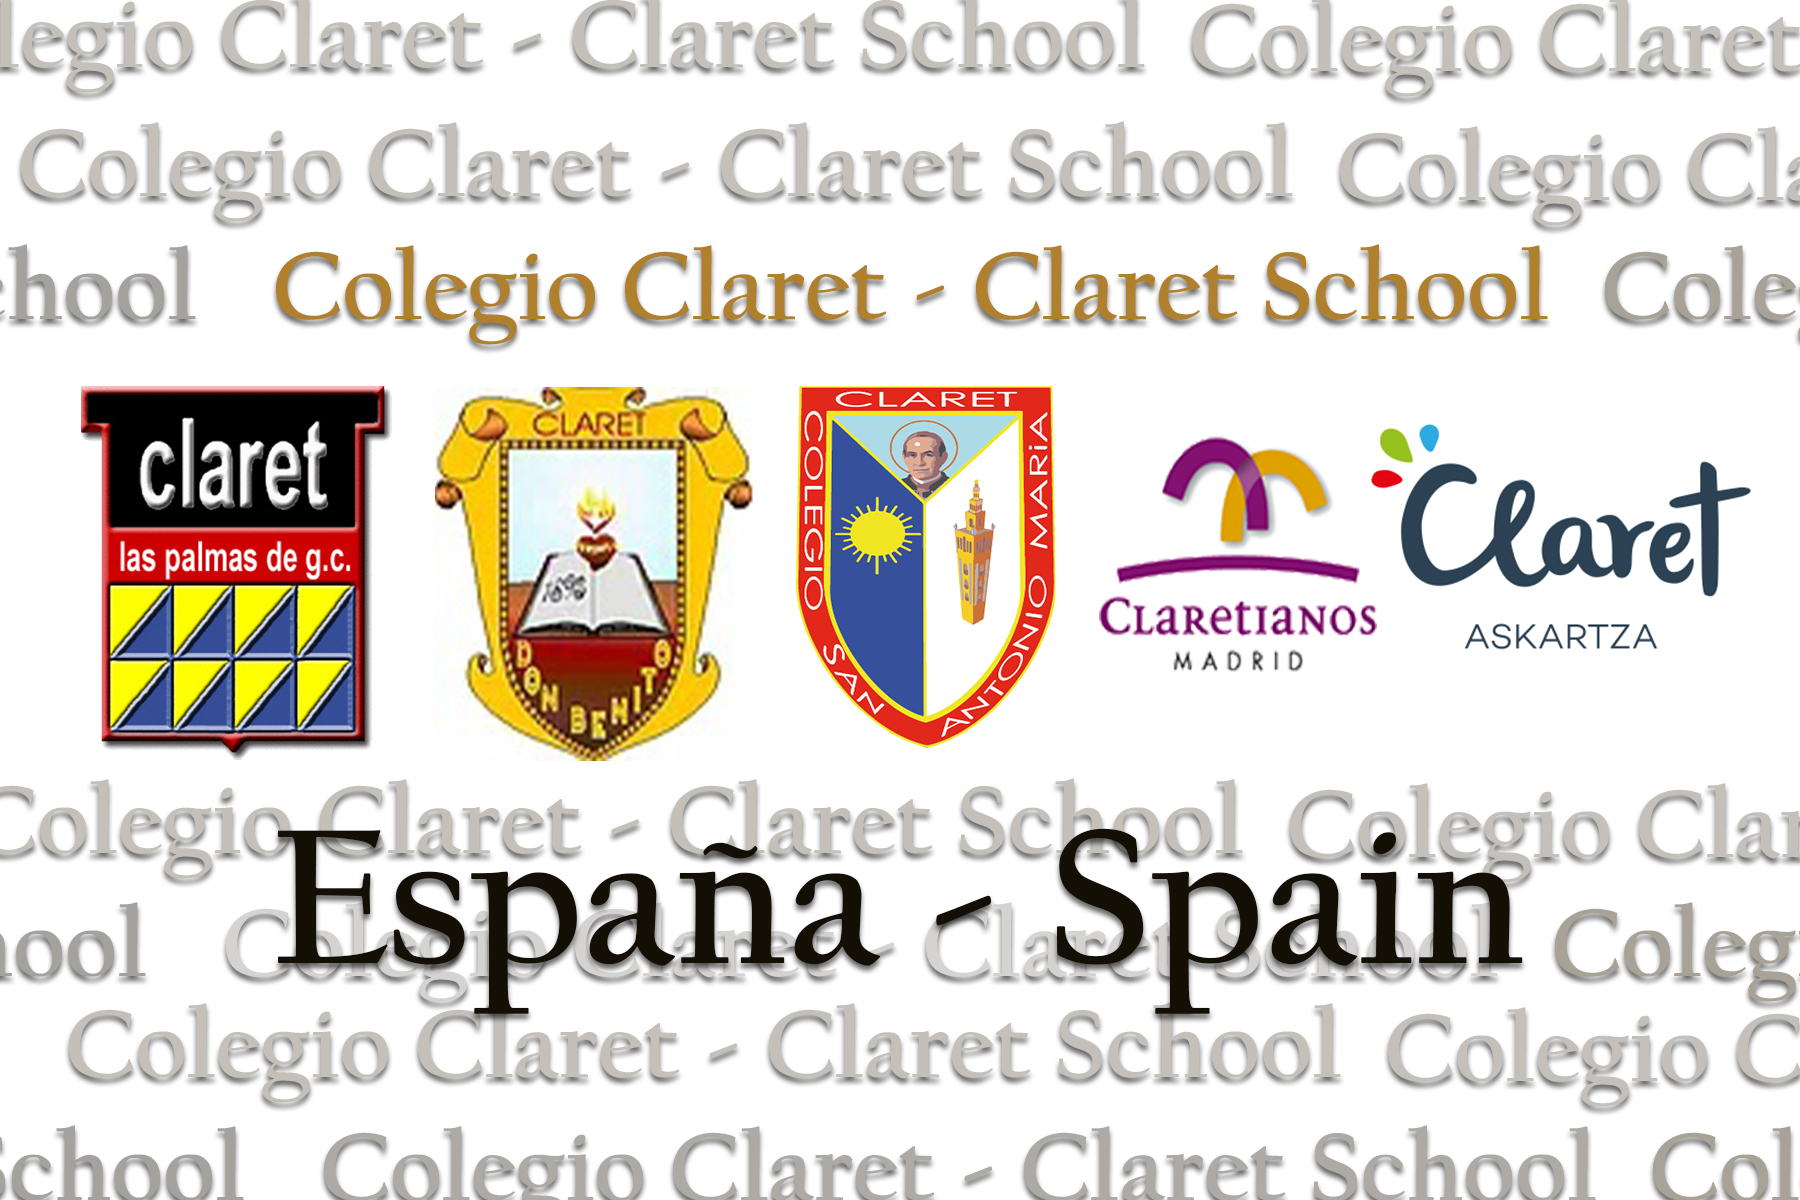 5 Claret Schools Among the Top 100 Best Schools in Spain